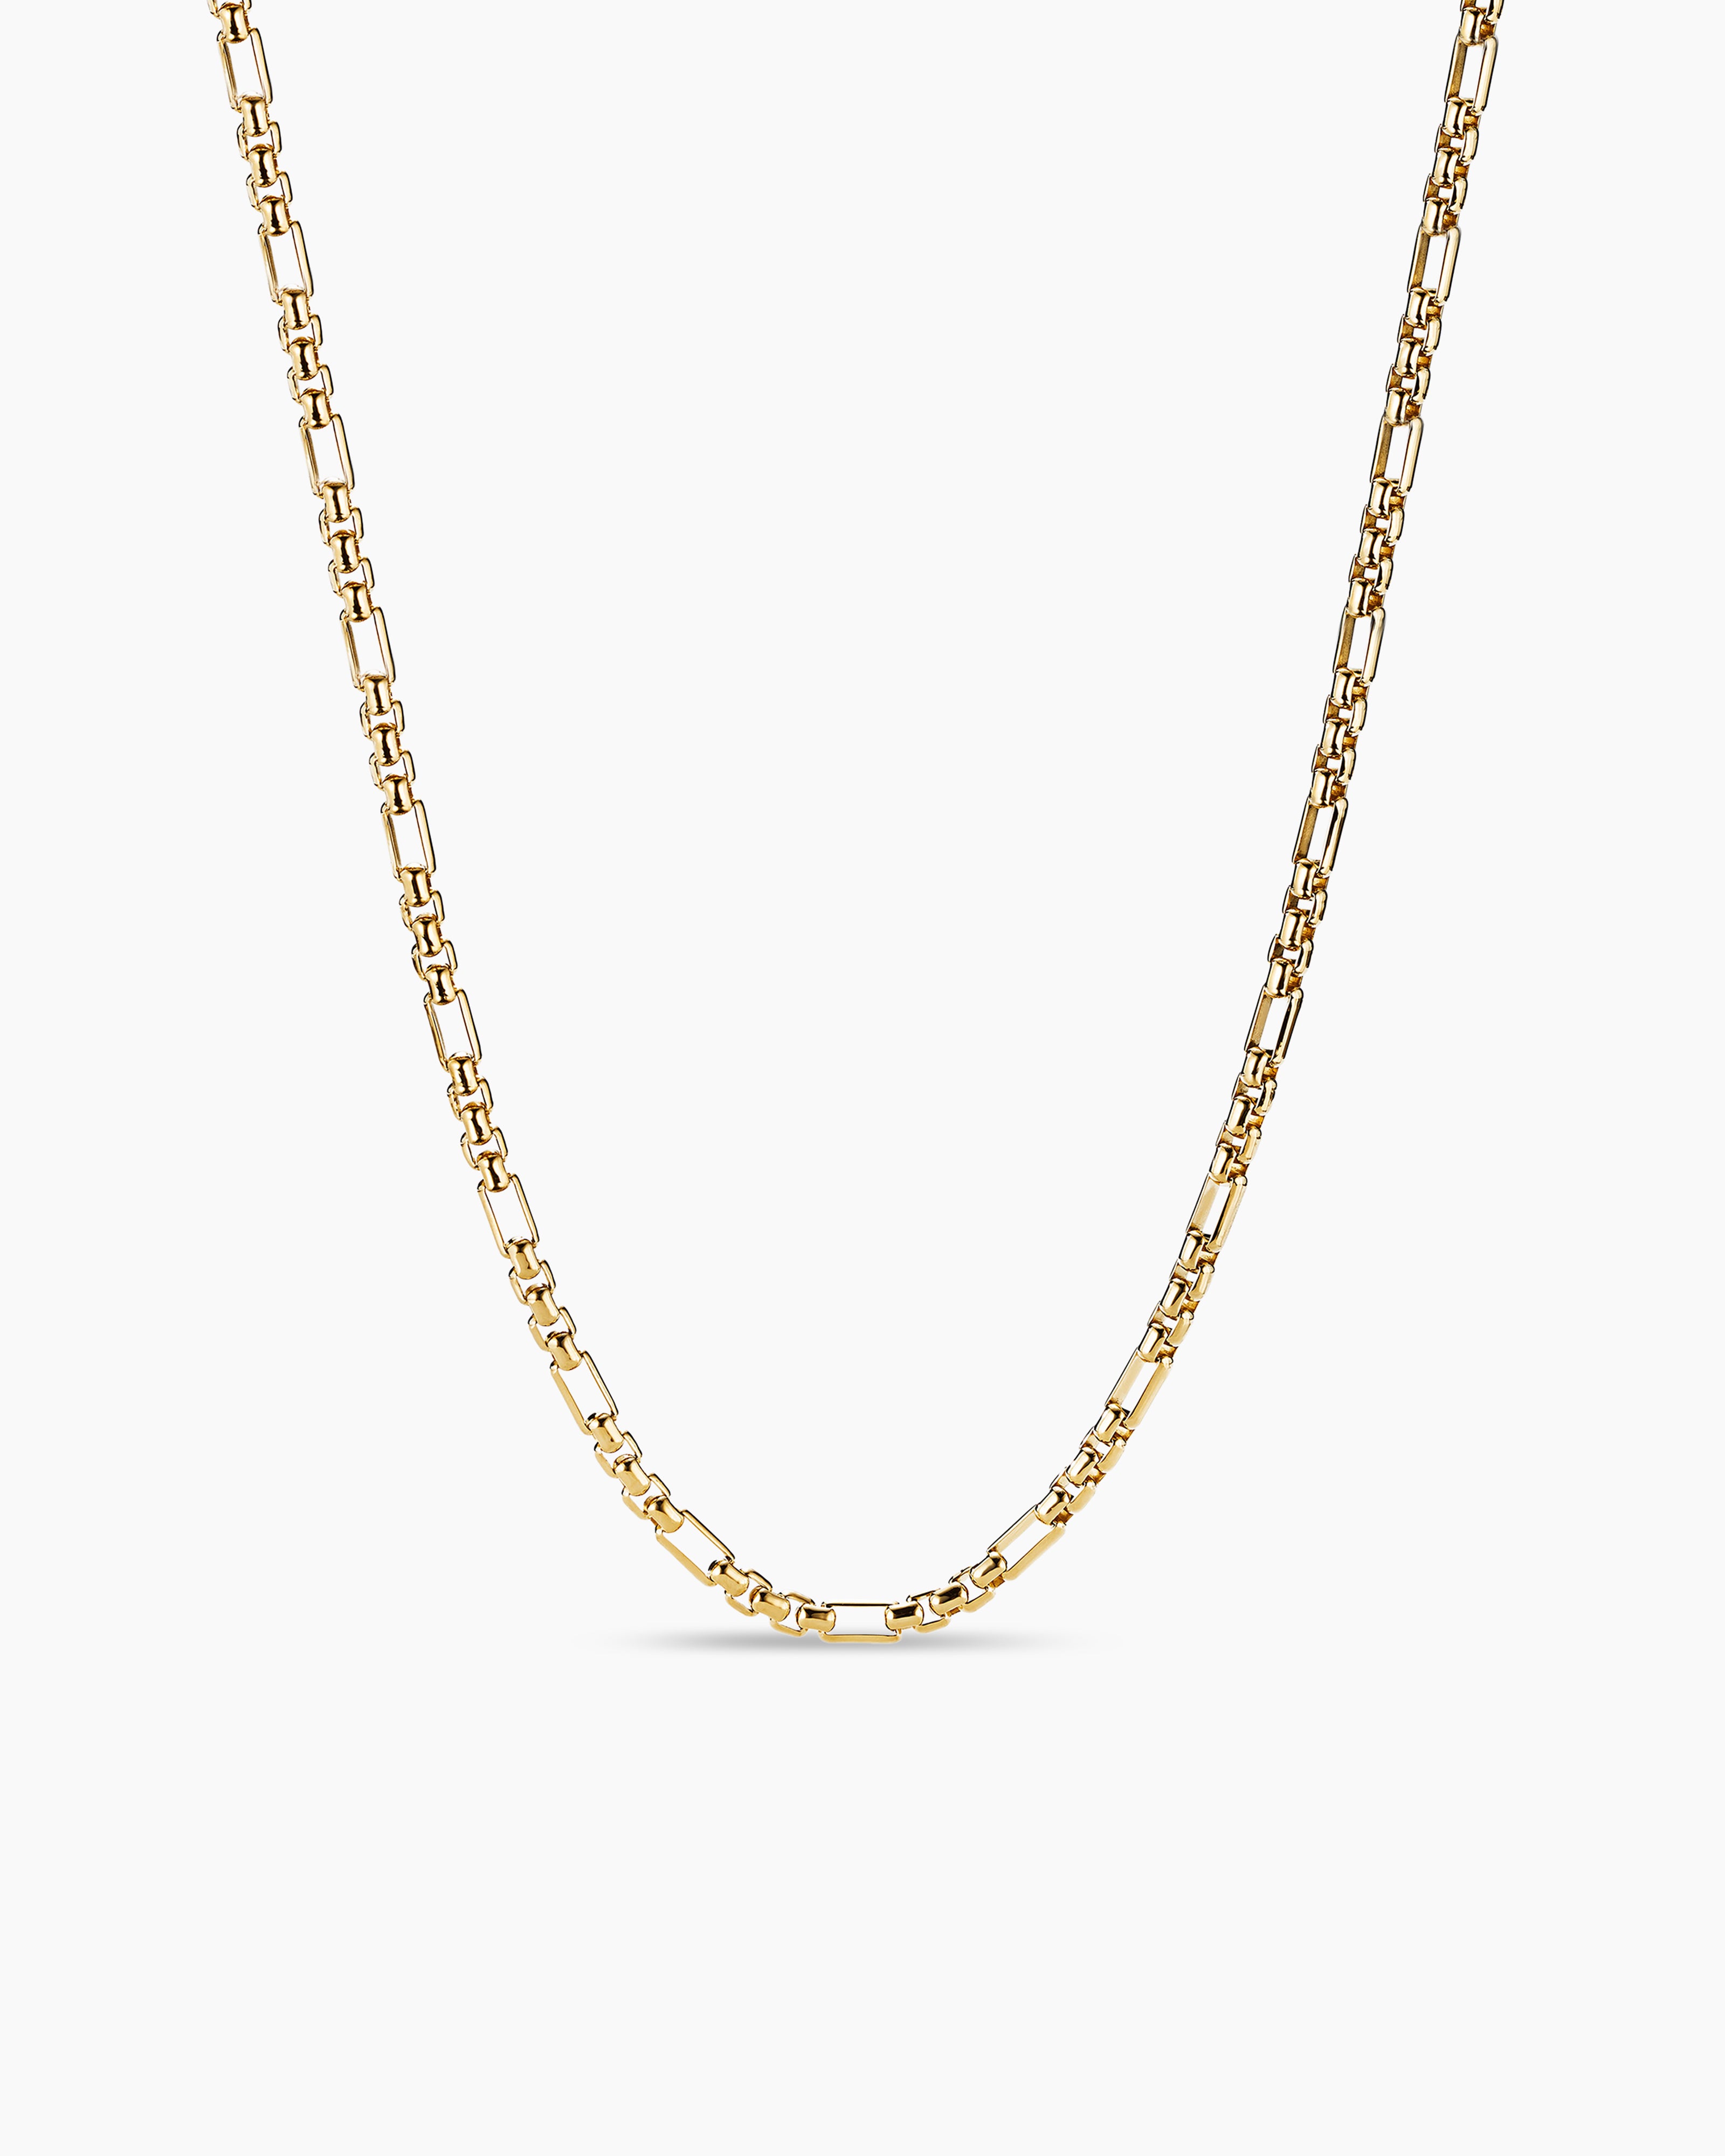 PurE18k - 18k Gold Necklace for Men 📍Dubai, UAE 👍Legit... | Facebook